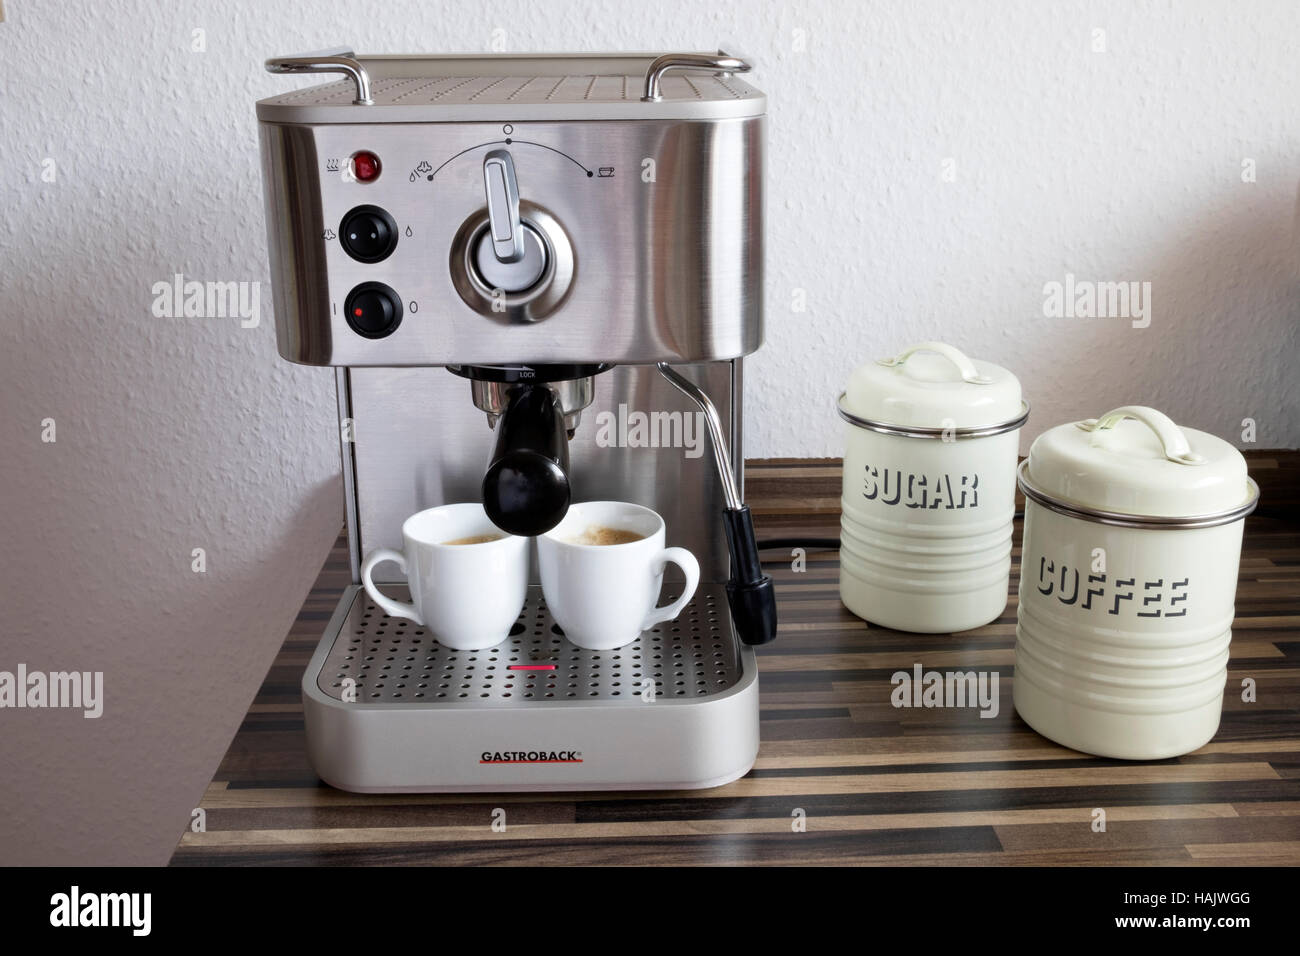 Gastroback coffee machine Stock Photo - Alamy